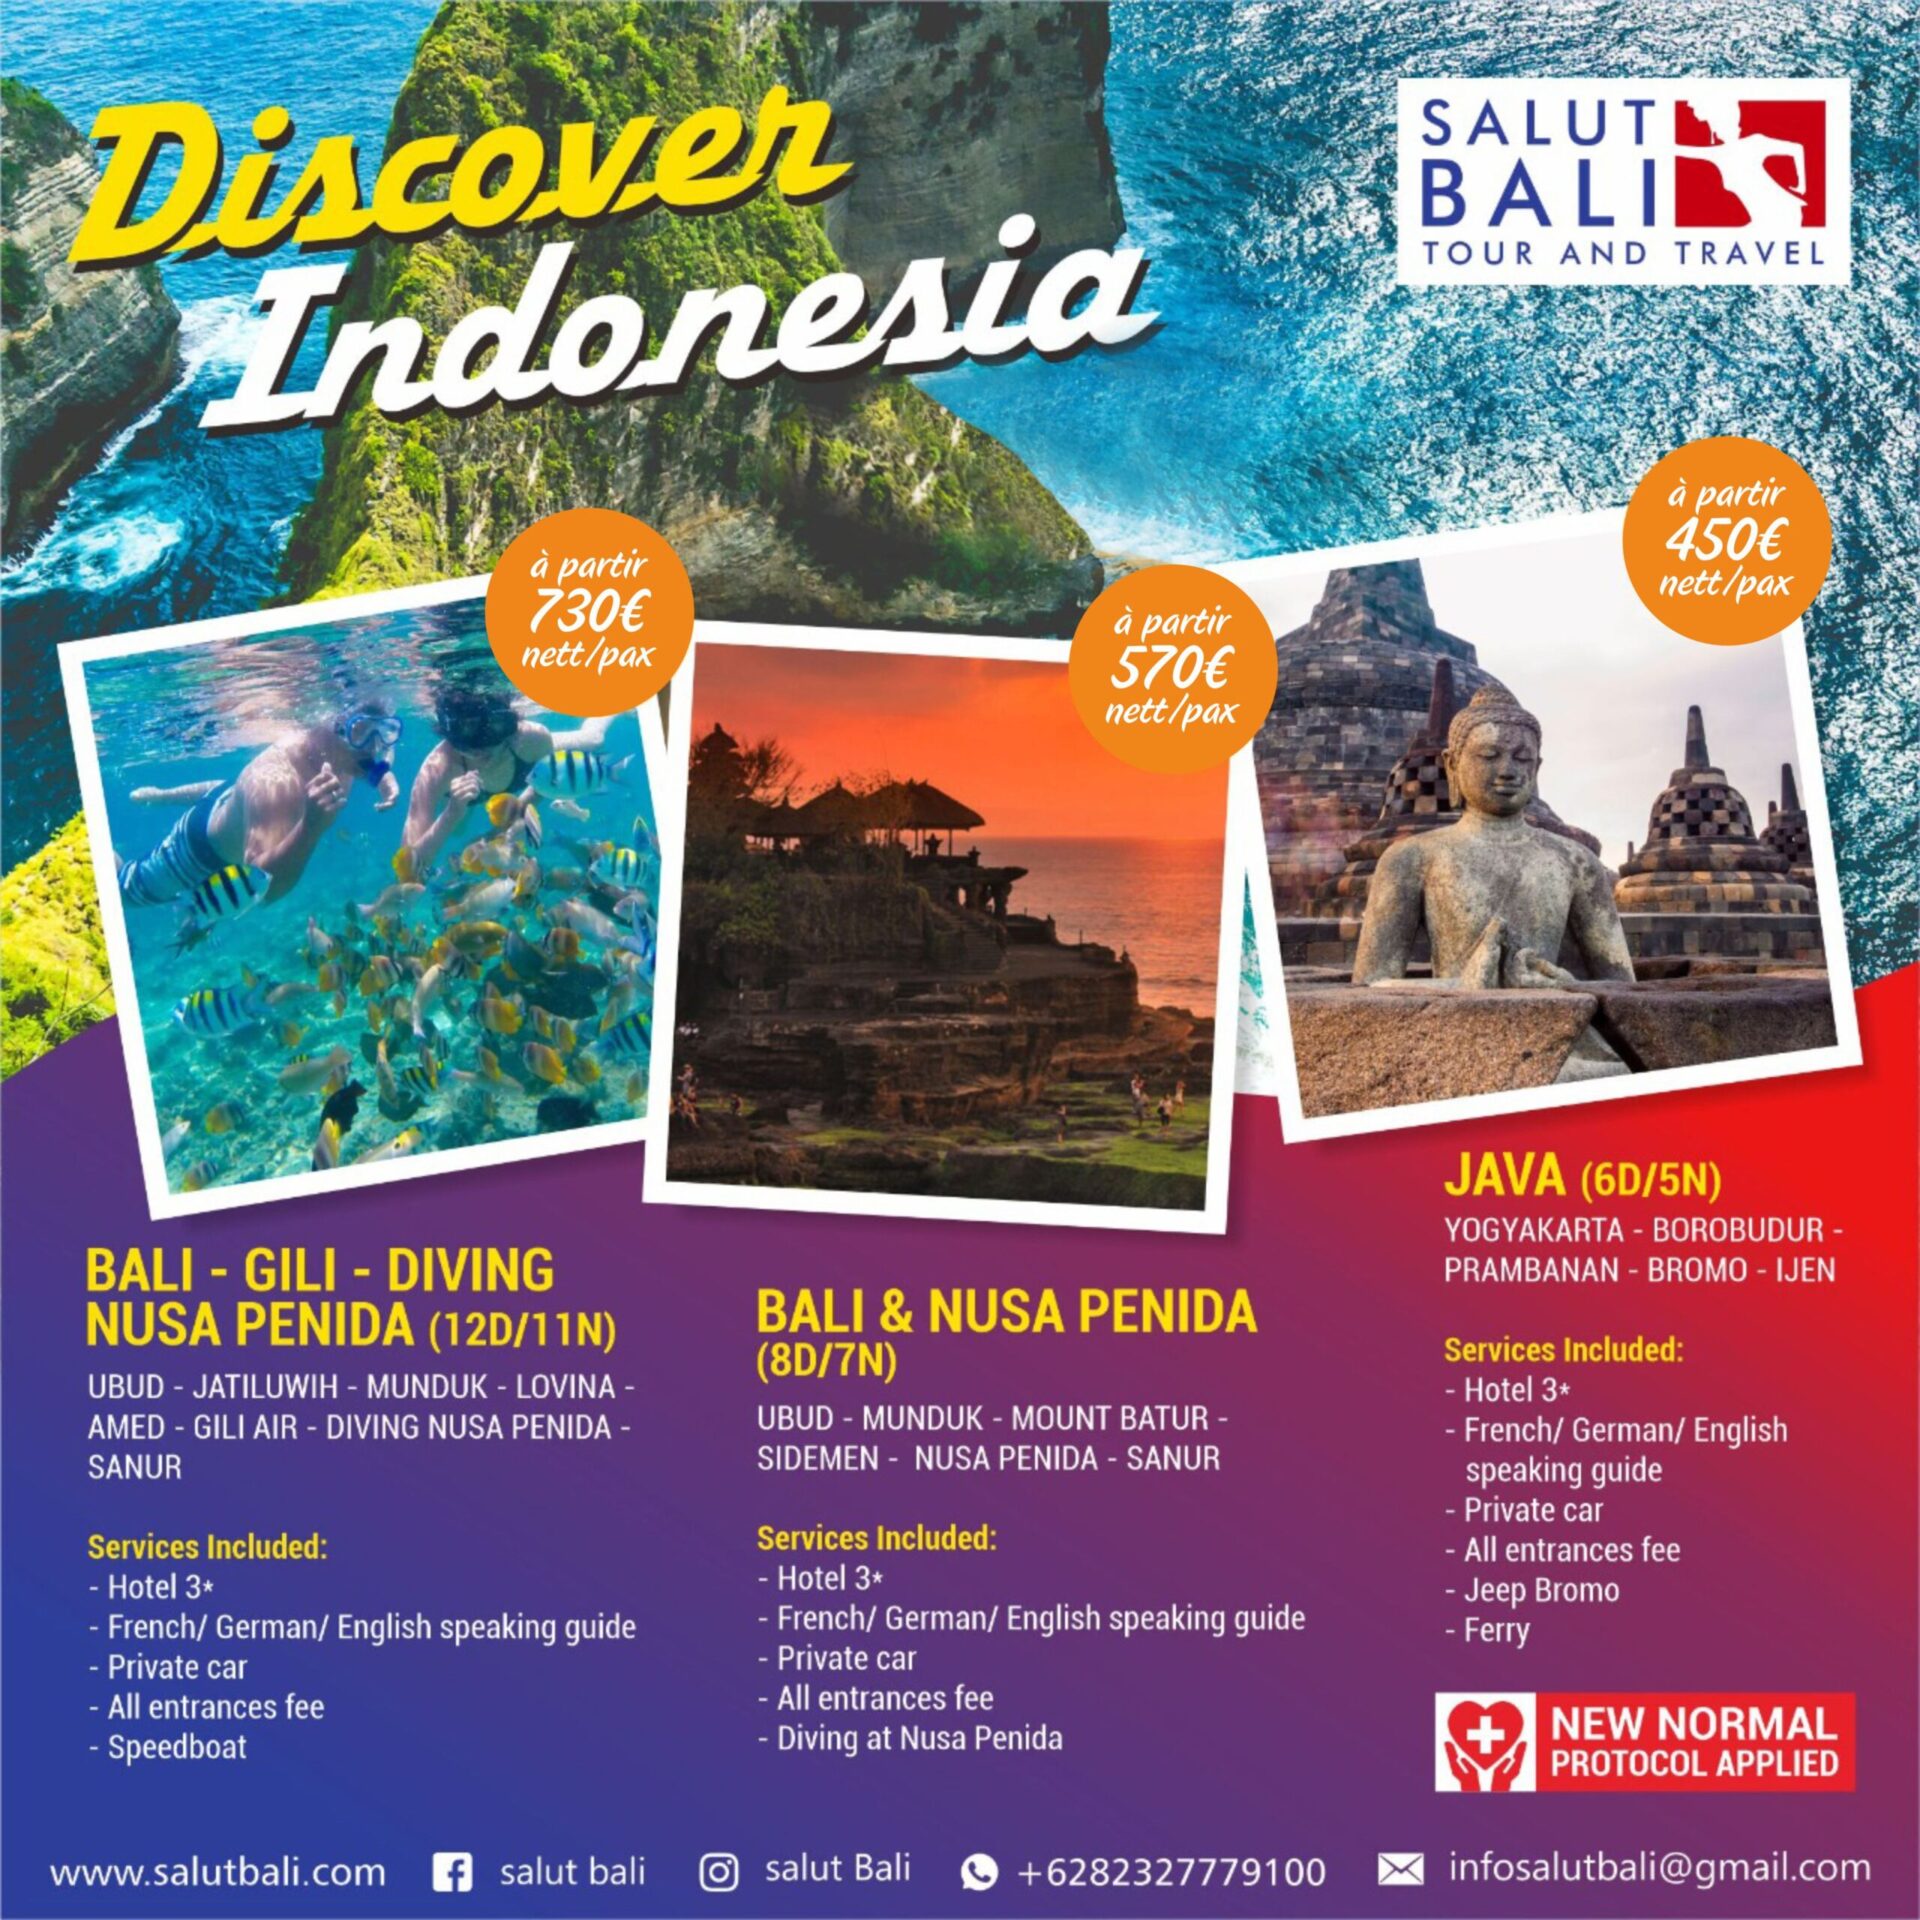 visit indonesia year dicanangkan pertama kali pada tahun